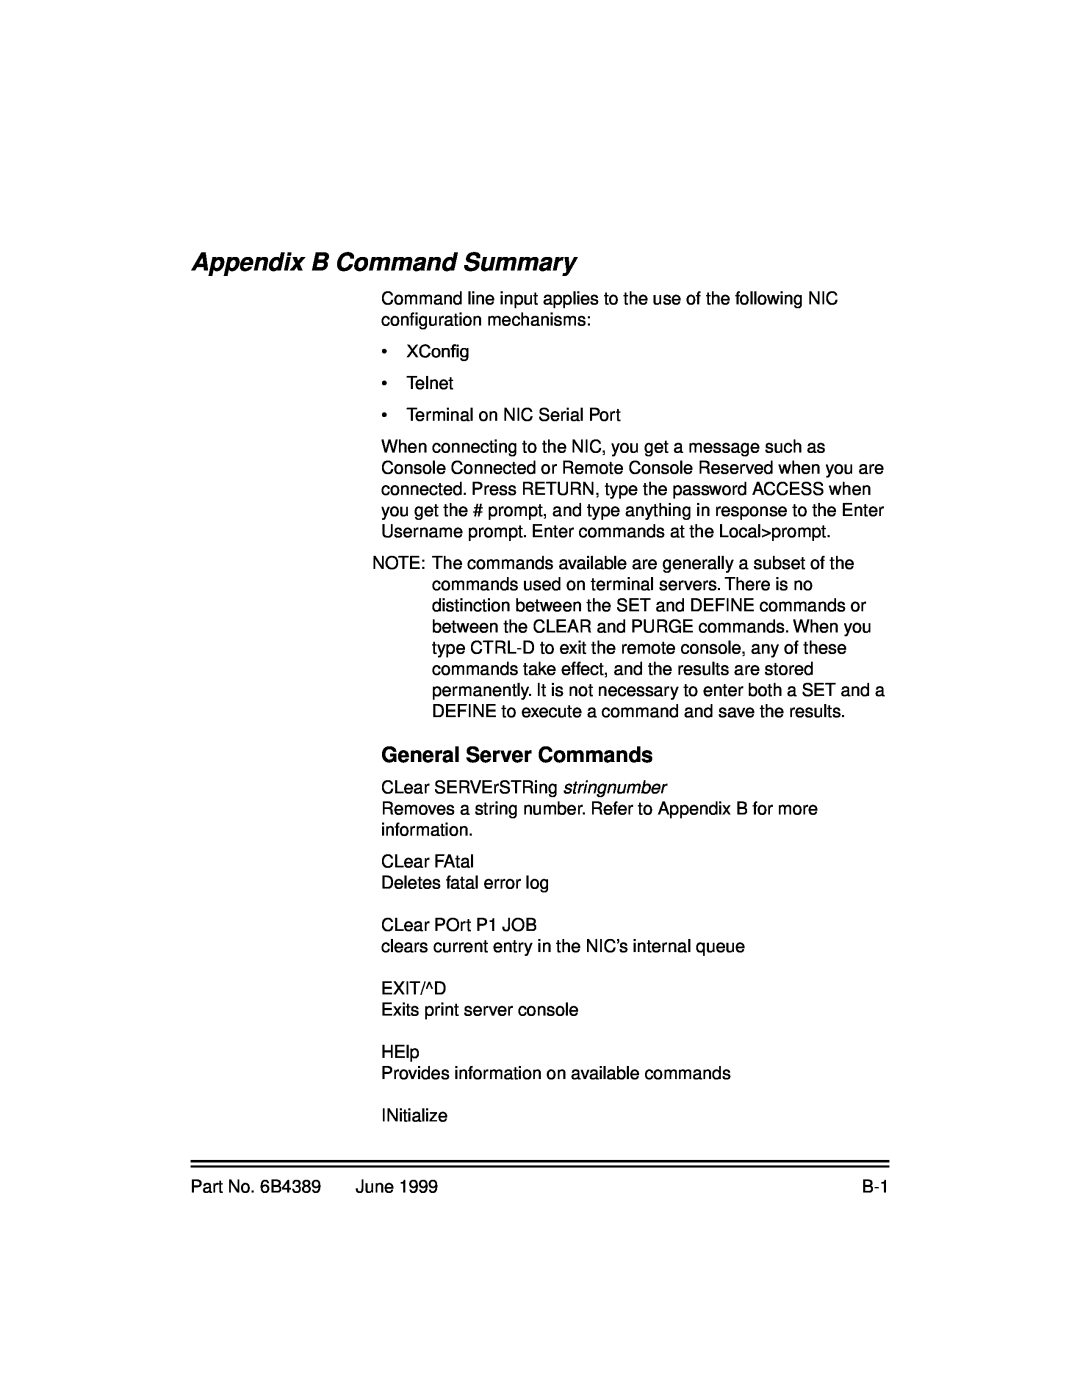 Kodak 8660, 8670 manual Appendix B Command Summary, General Server Commands 